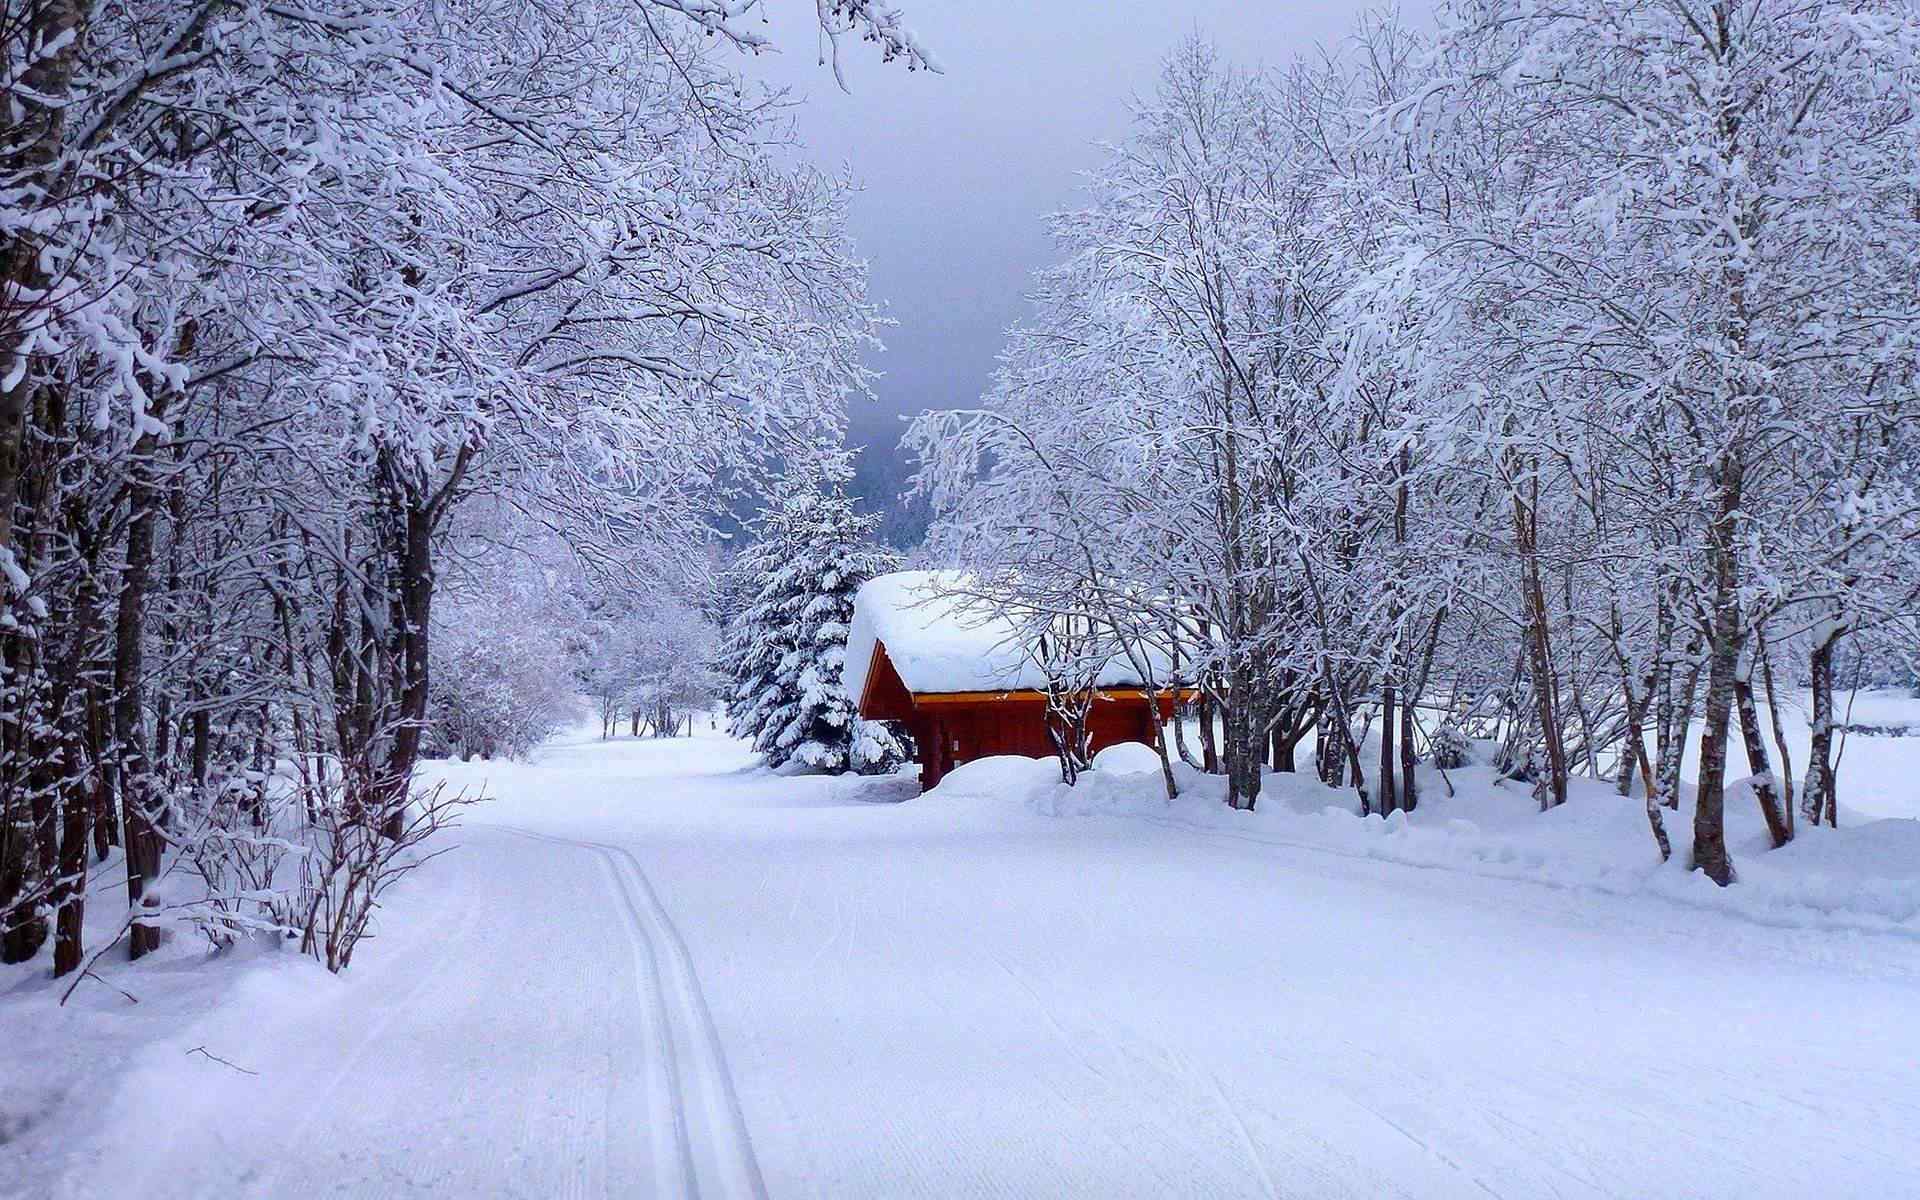  唯美雪景中小木屋风景壁纸